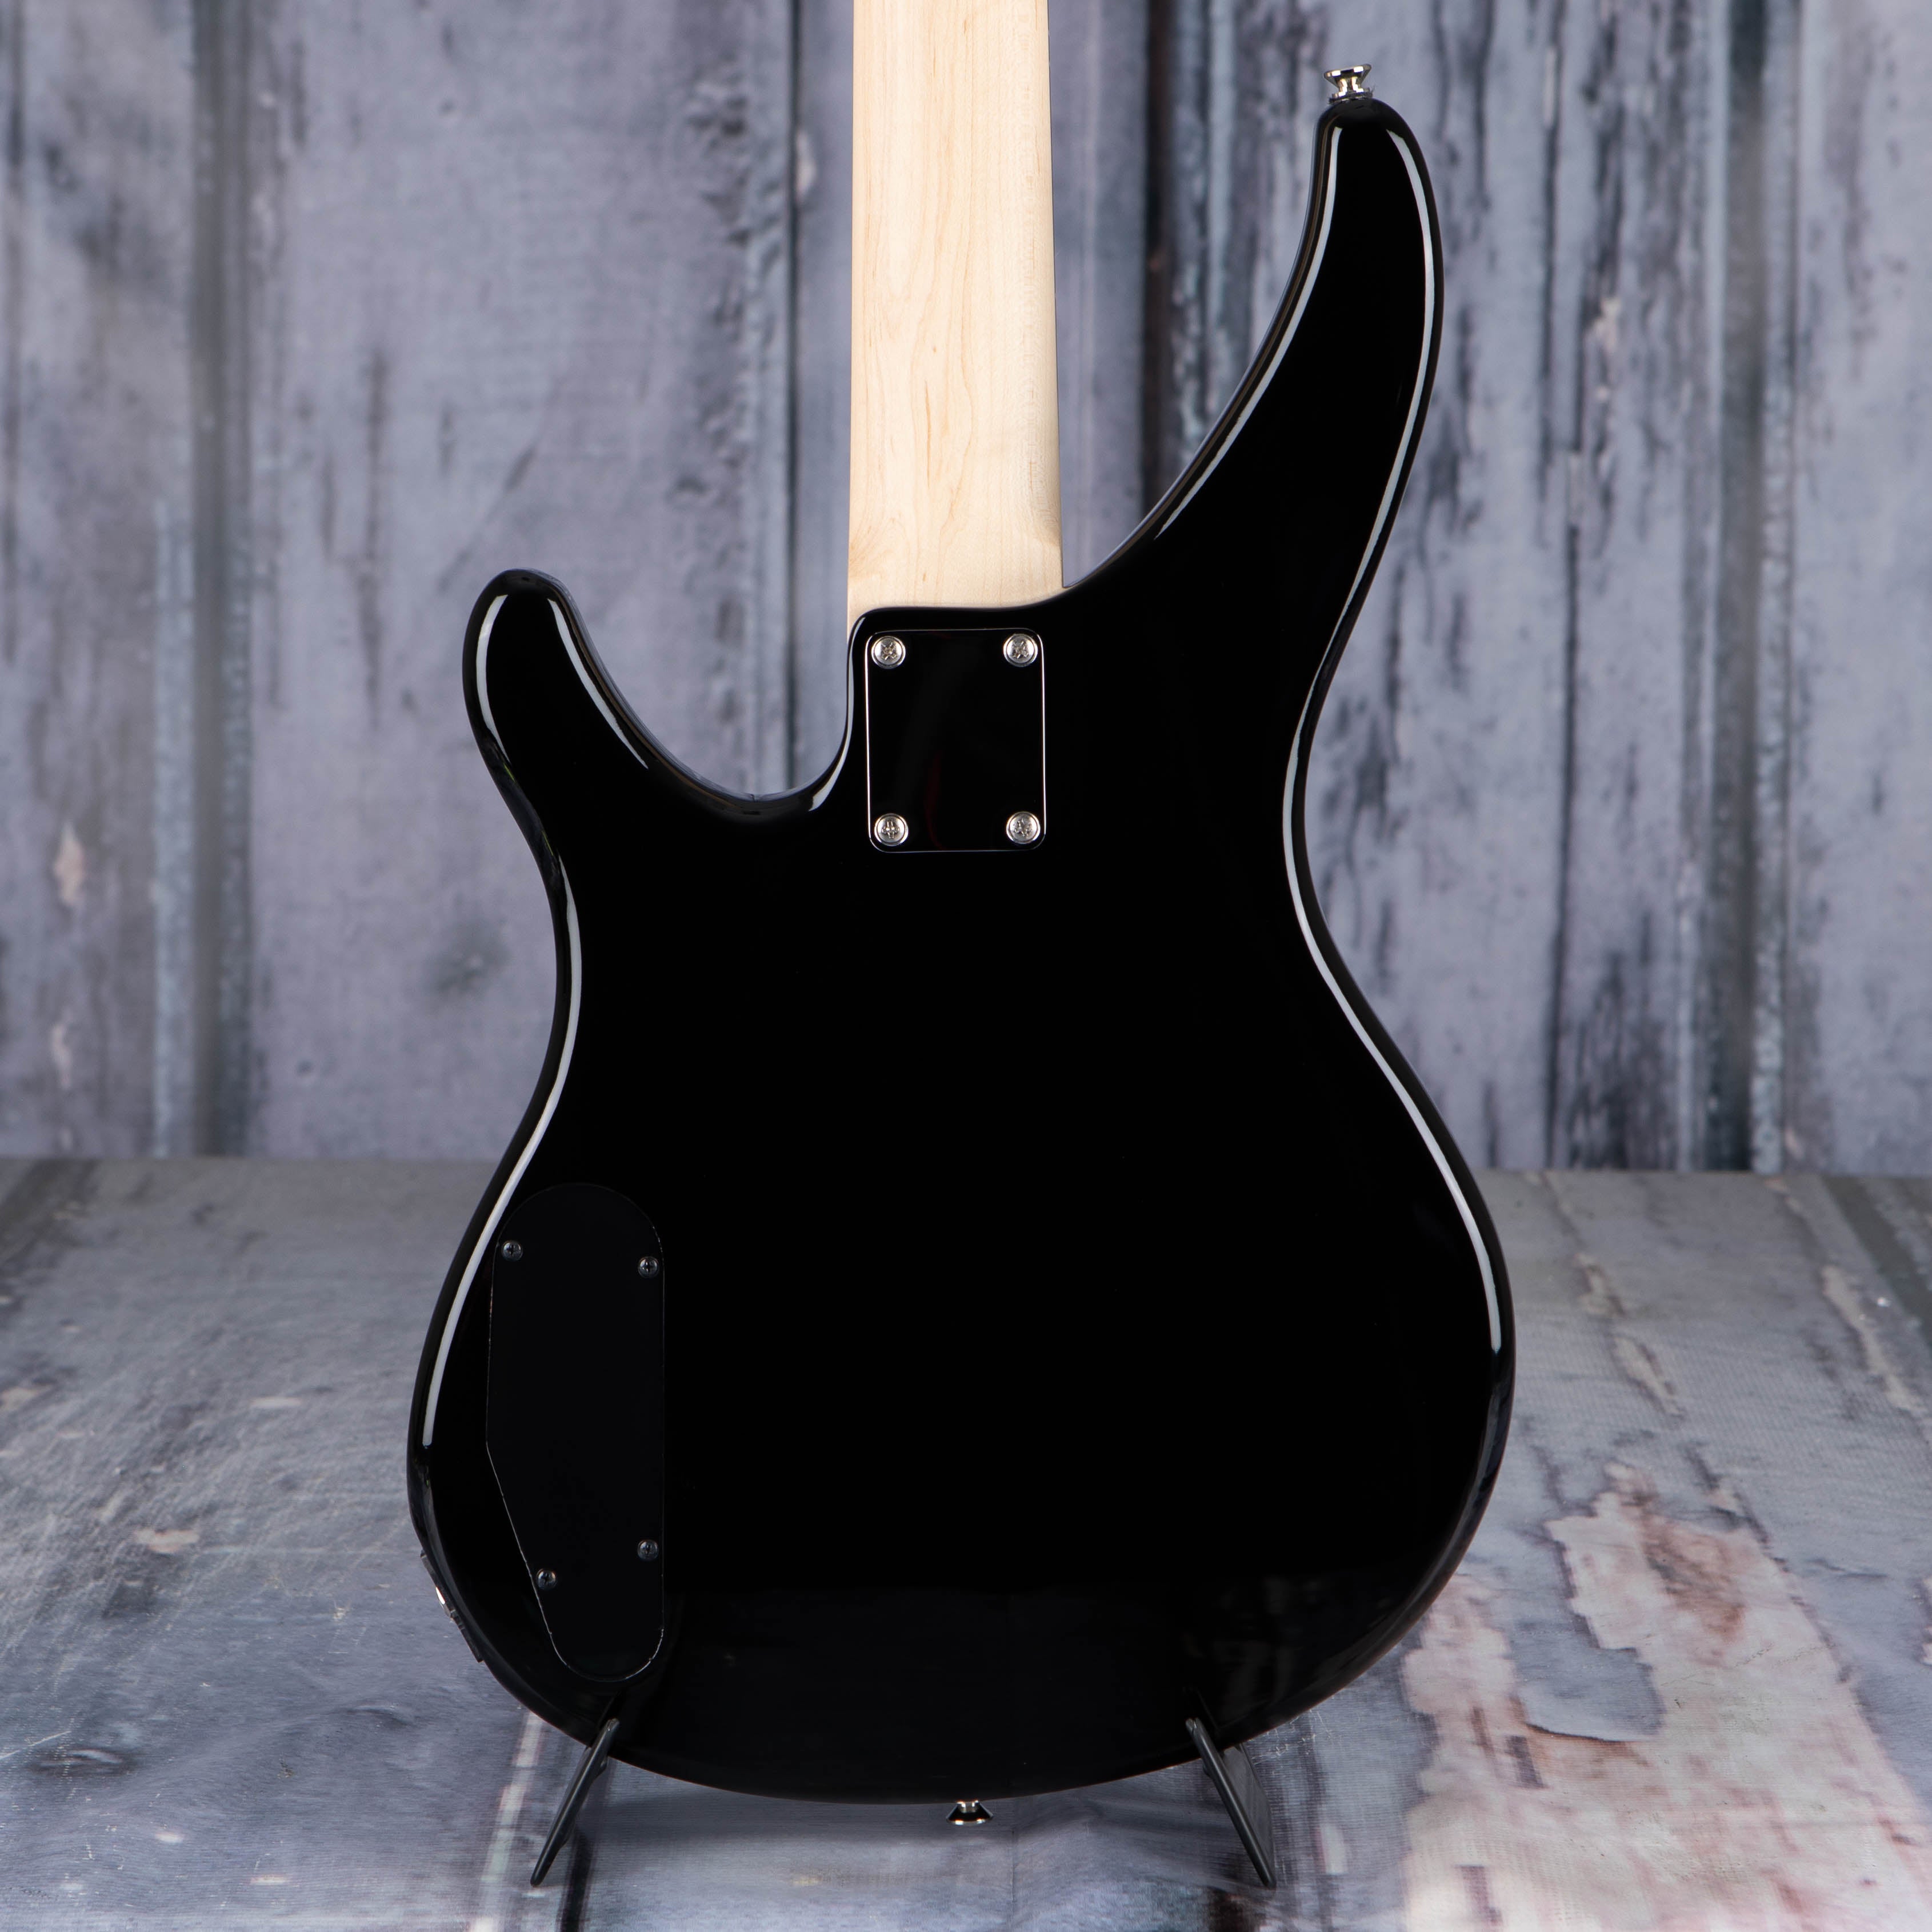 Yamaha TRBX174 Electric Bass Guitar, Black, back closeup